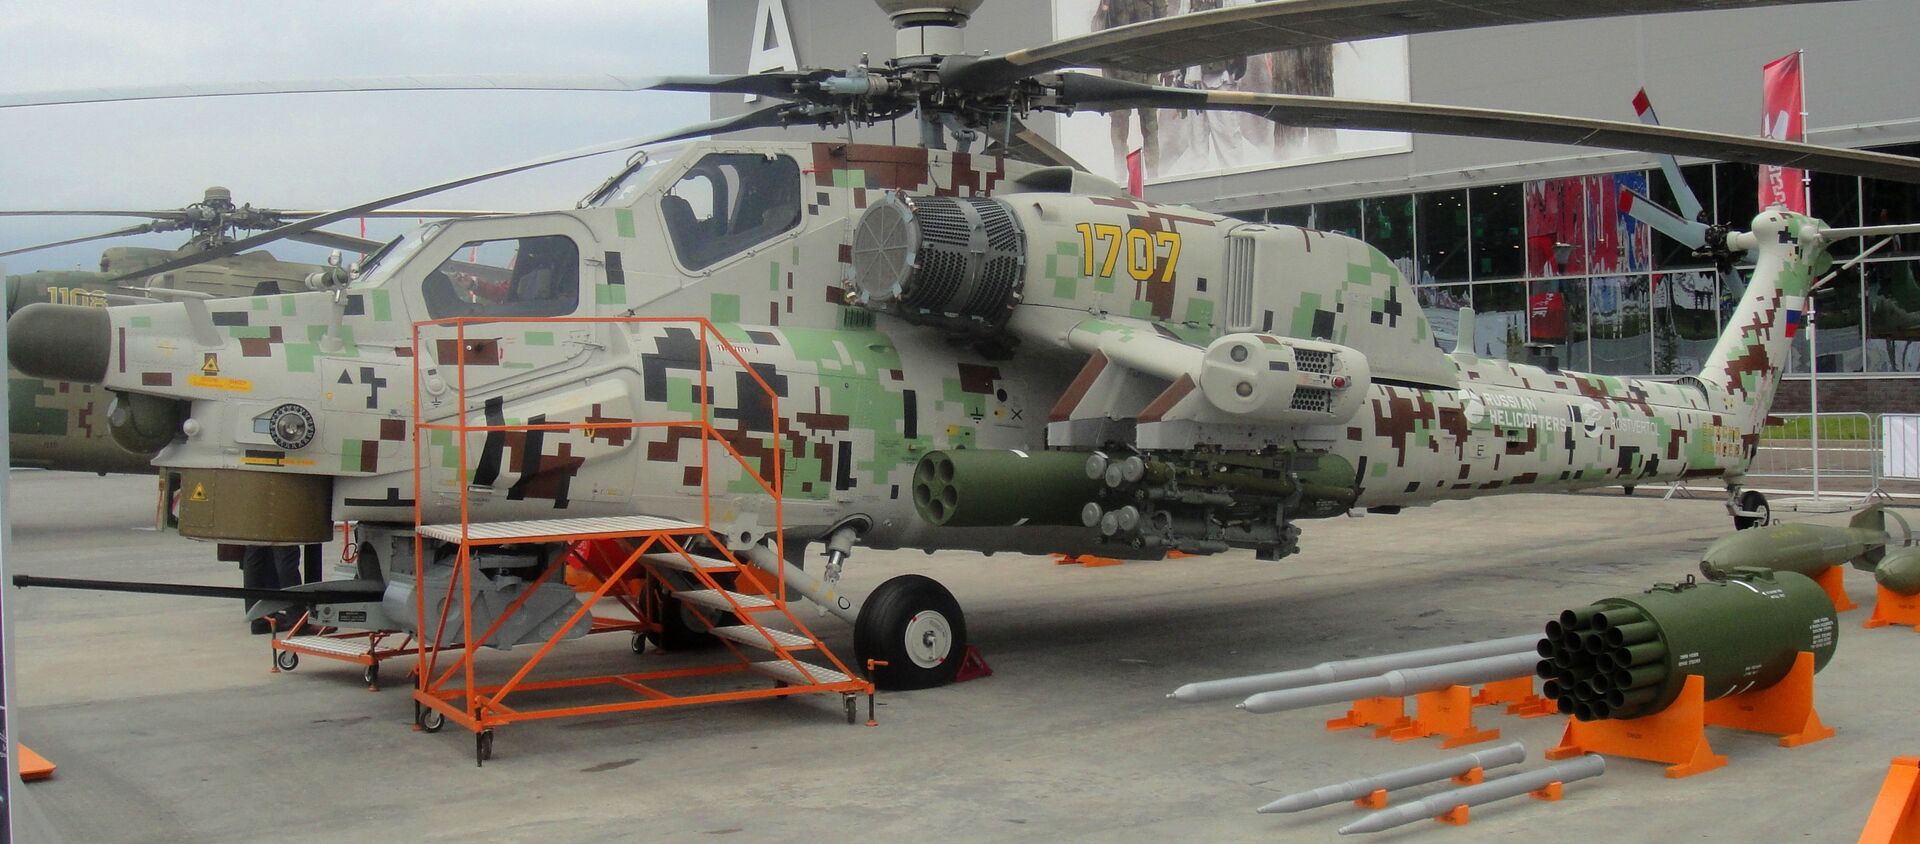 Máy bay trực thăng tấn công Mi-28 NE Thợ săn đêm tại Diễn đàn Quân đội-2018 - Sputnik Việt Nam, 1920, 23.08.2018